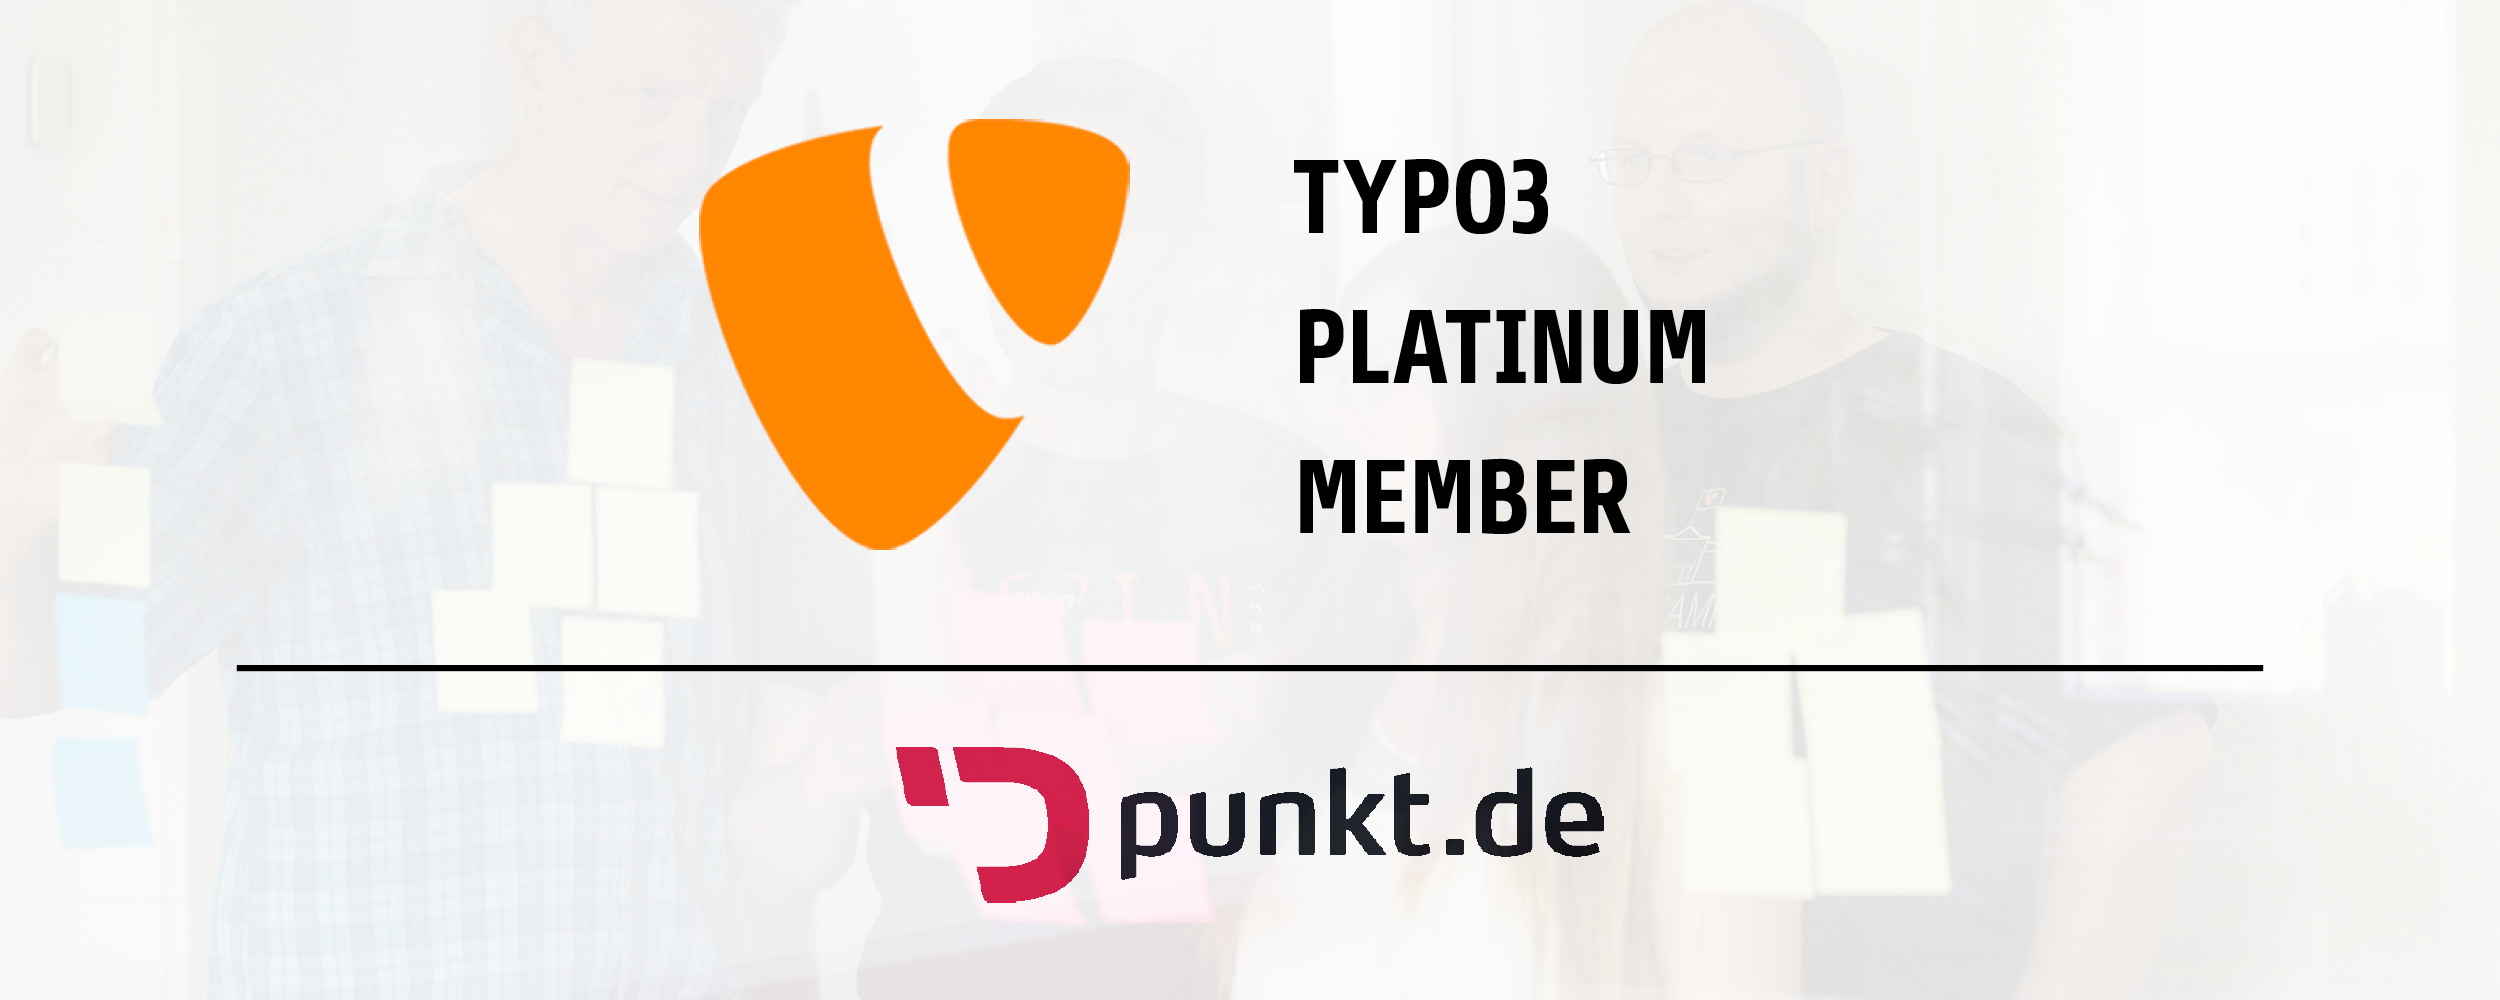 punkt.de ist TYPO3 Platinum Member